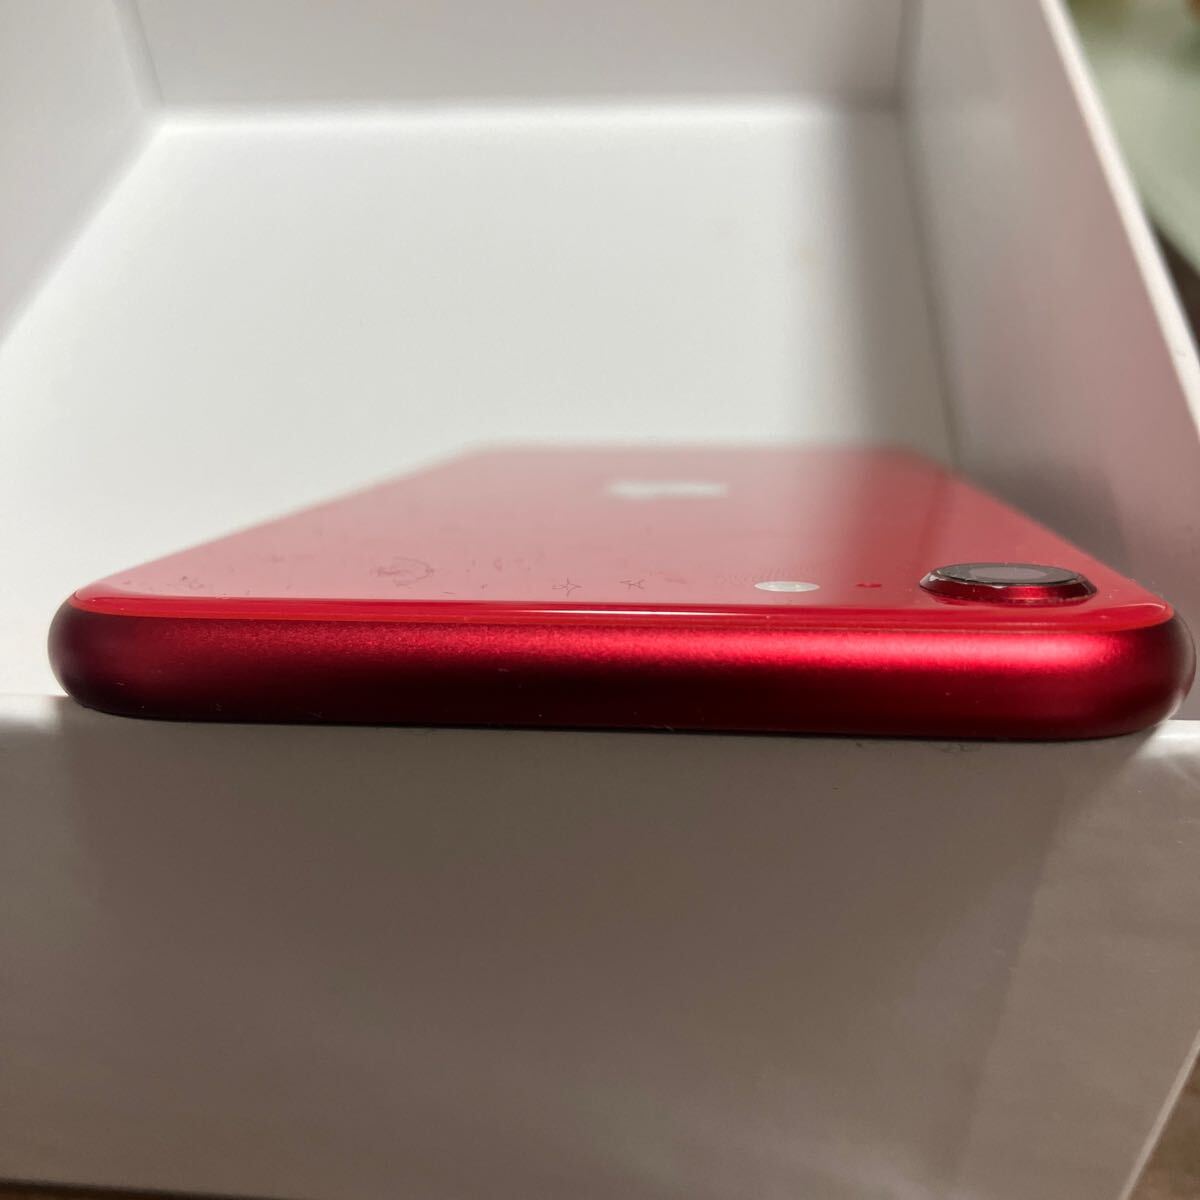 Apple iPhone SE2 SIMフリー product RED 128GB バッテリー容量100%表示エラー無の画像5